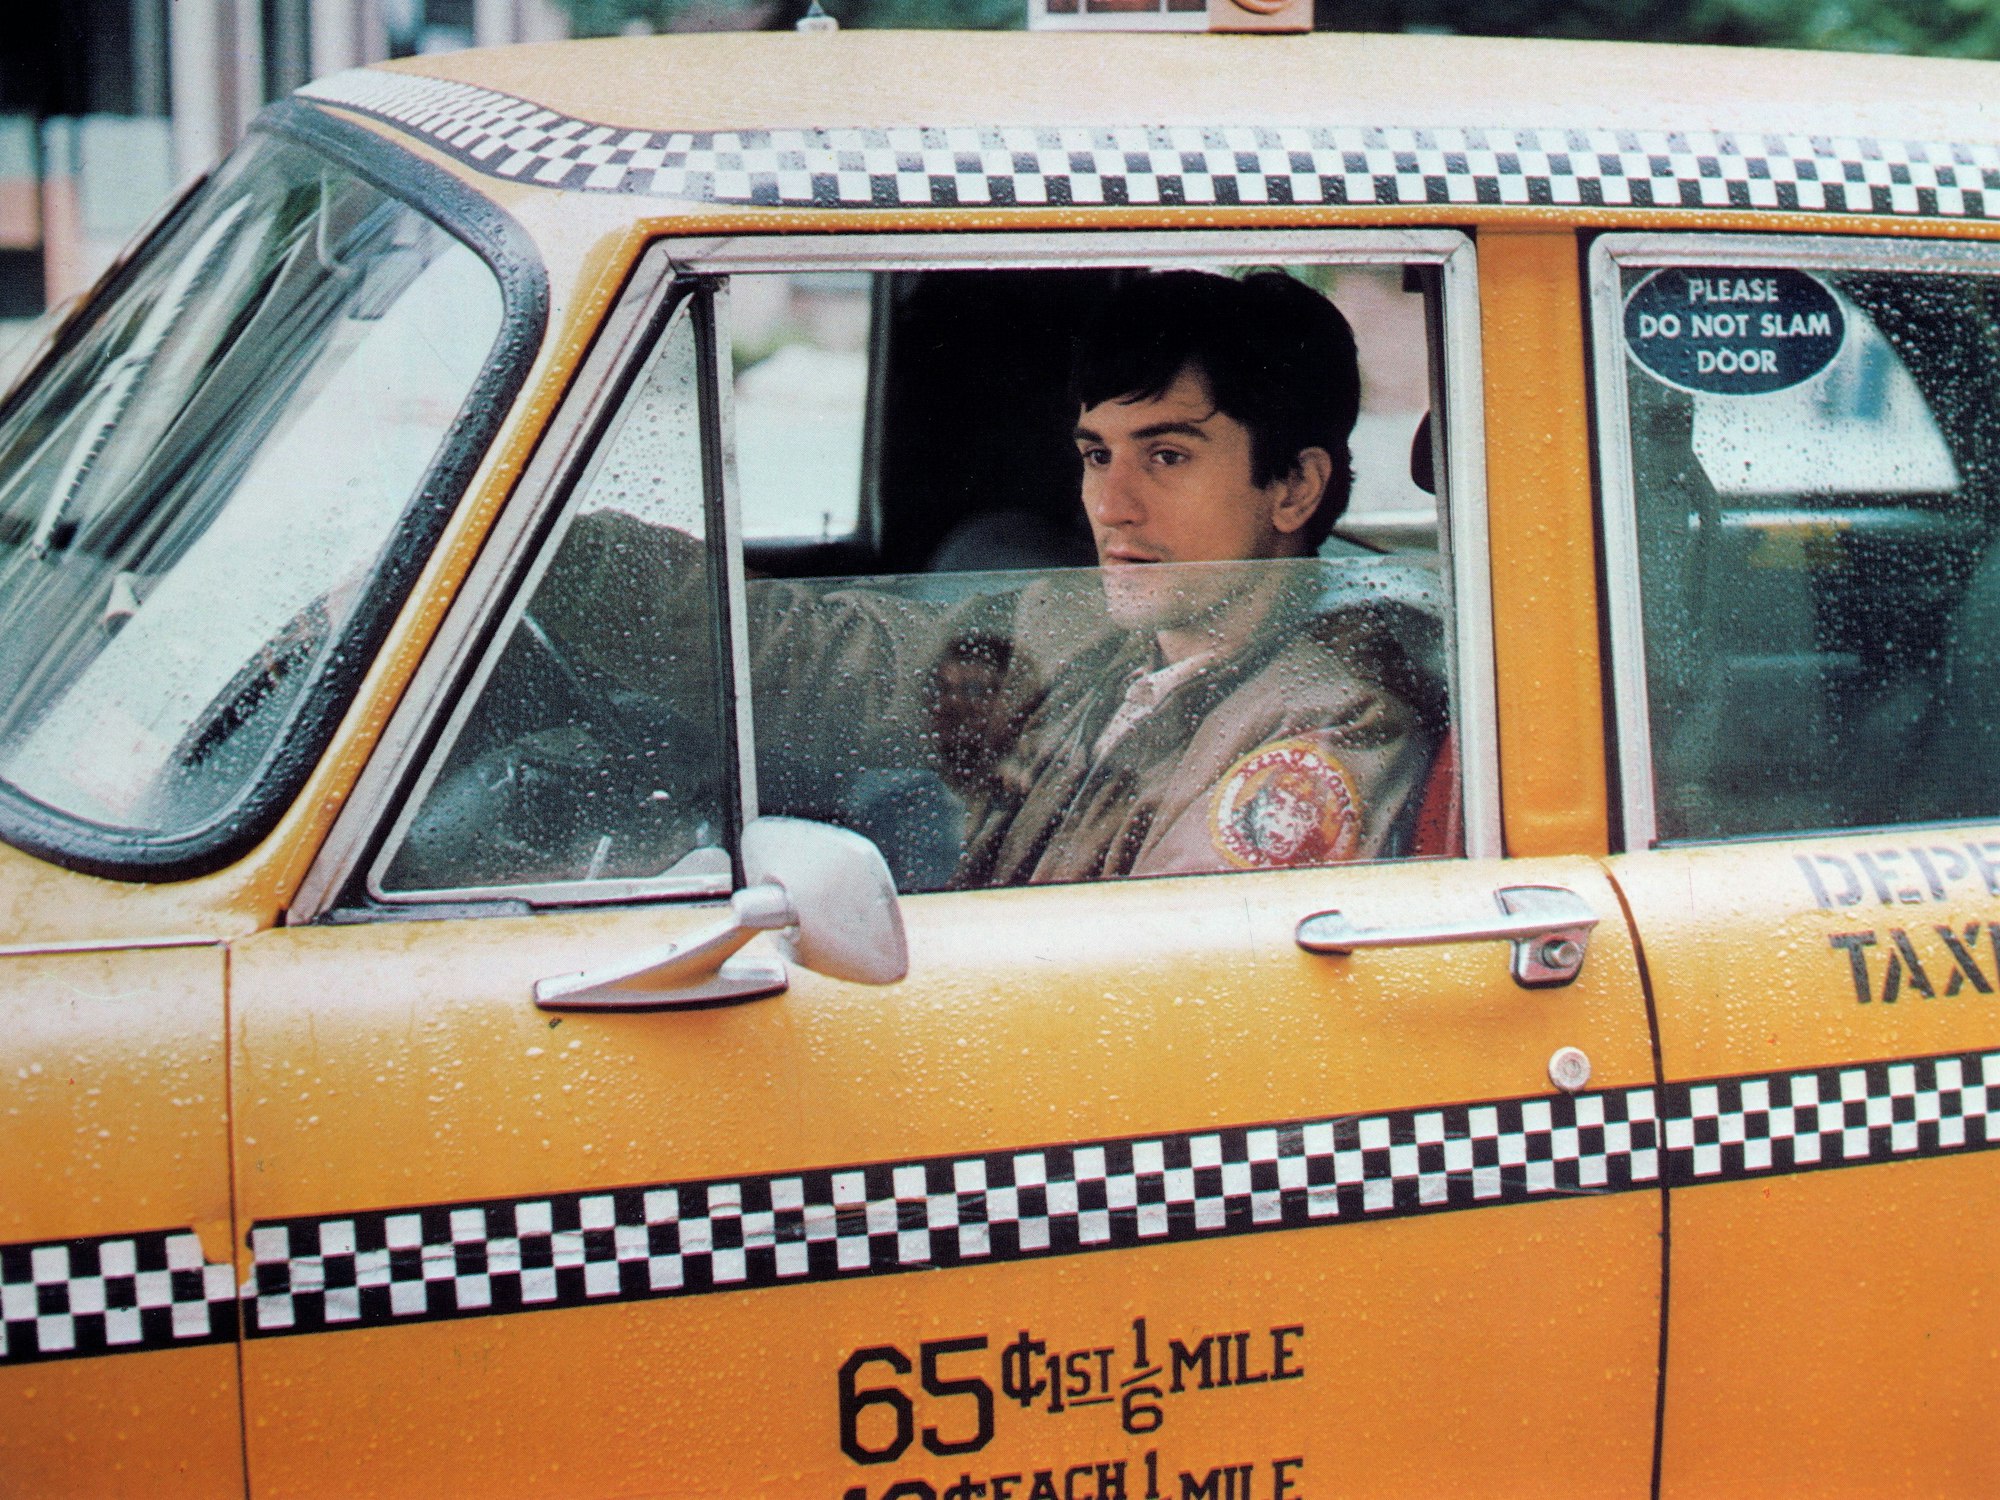 Robert de Niro sitzt in einem Taxi im gleichnamigen Film "Taxi Driver"